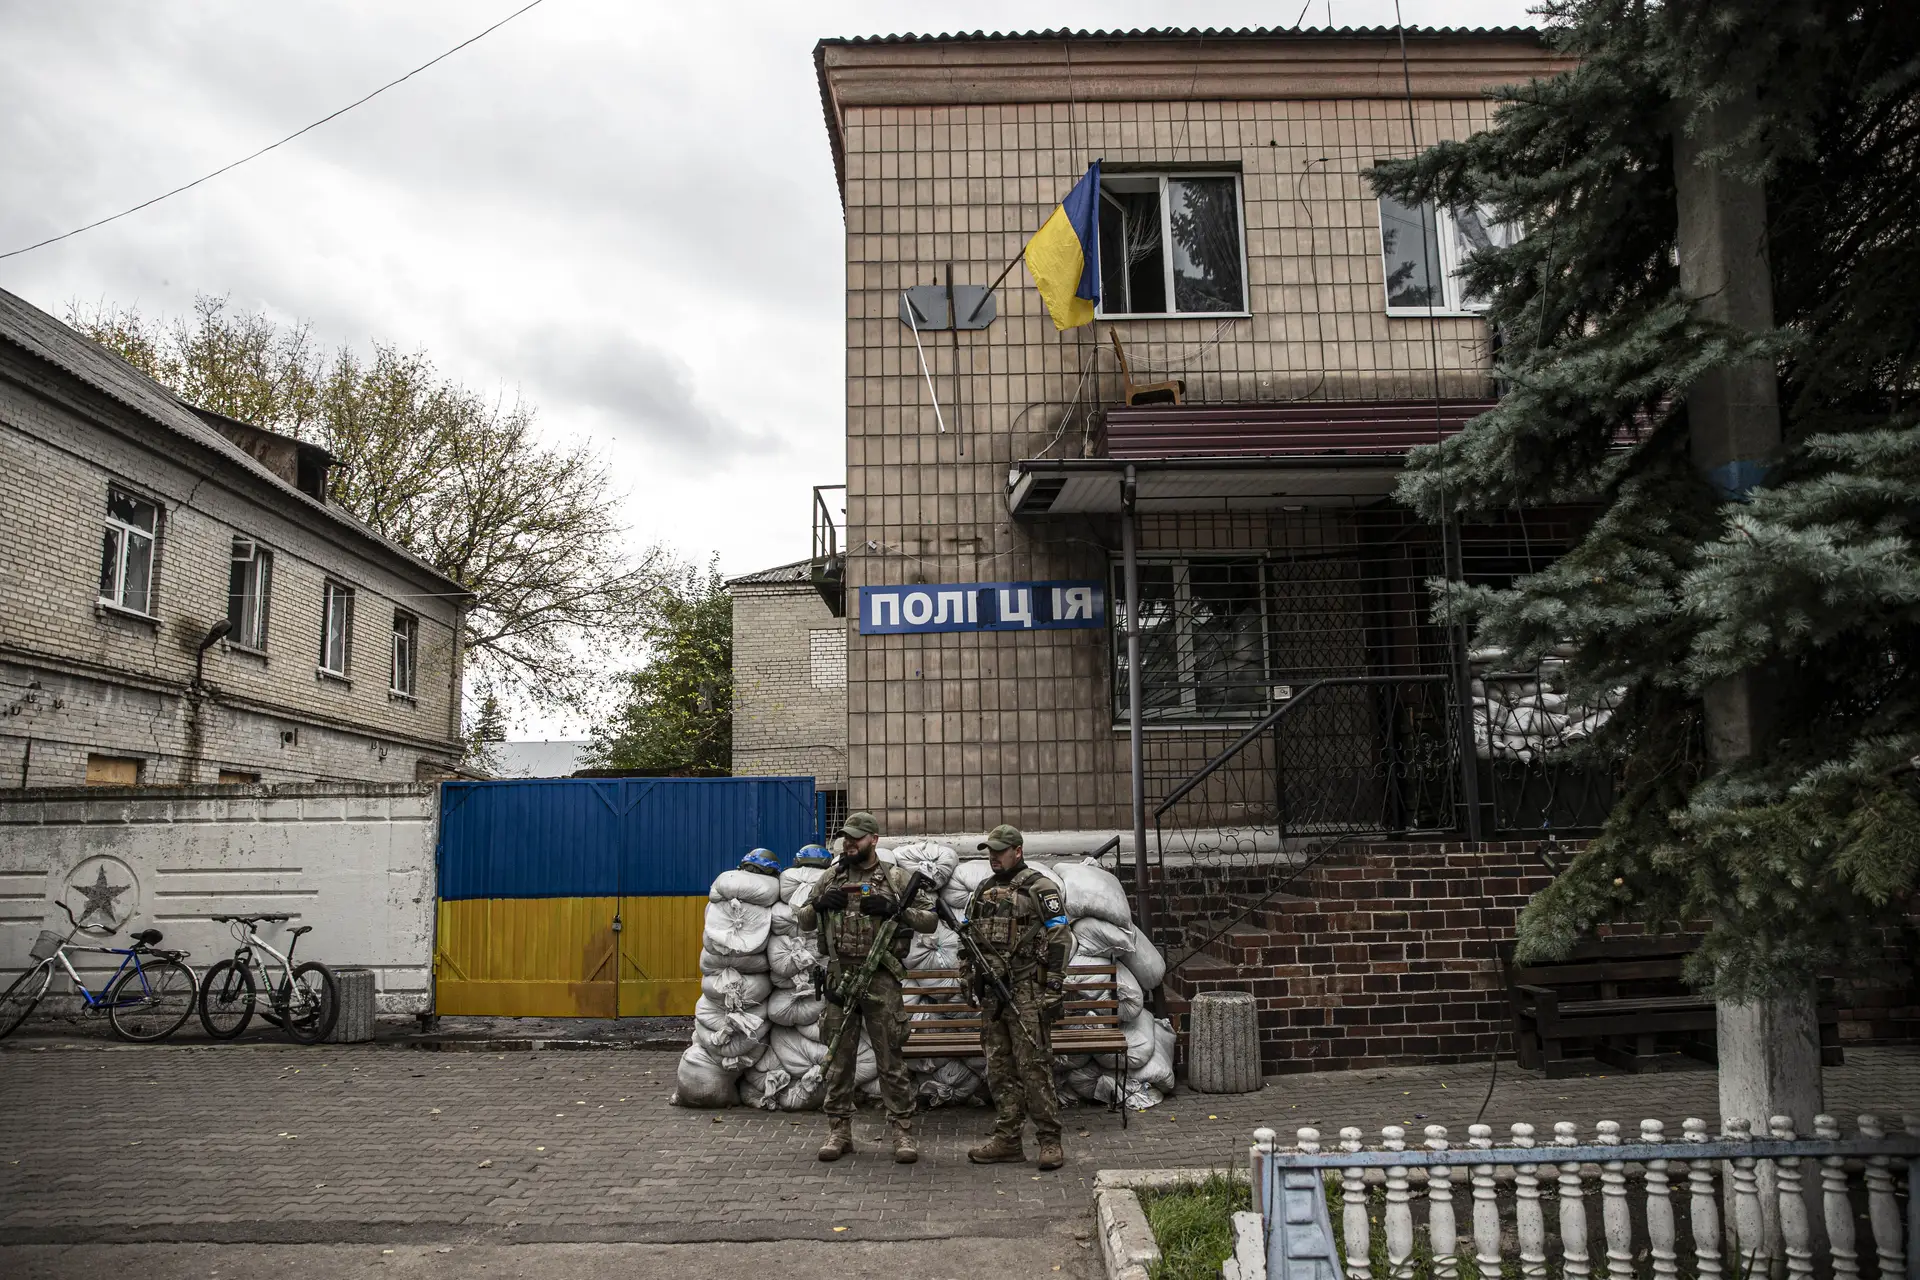 Kiev garante "vida, segurança e justiça" aos soldados russos que se rendam